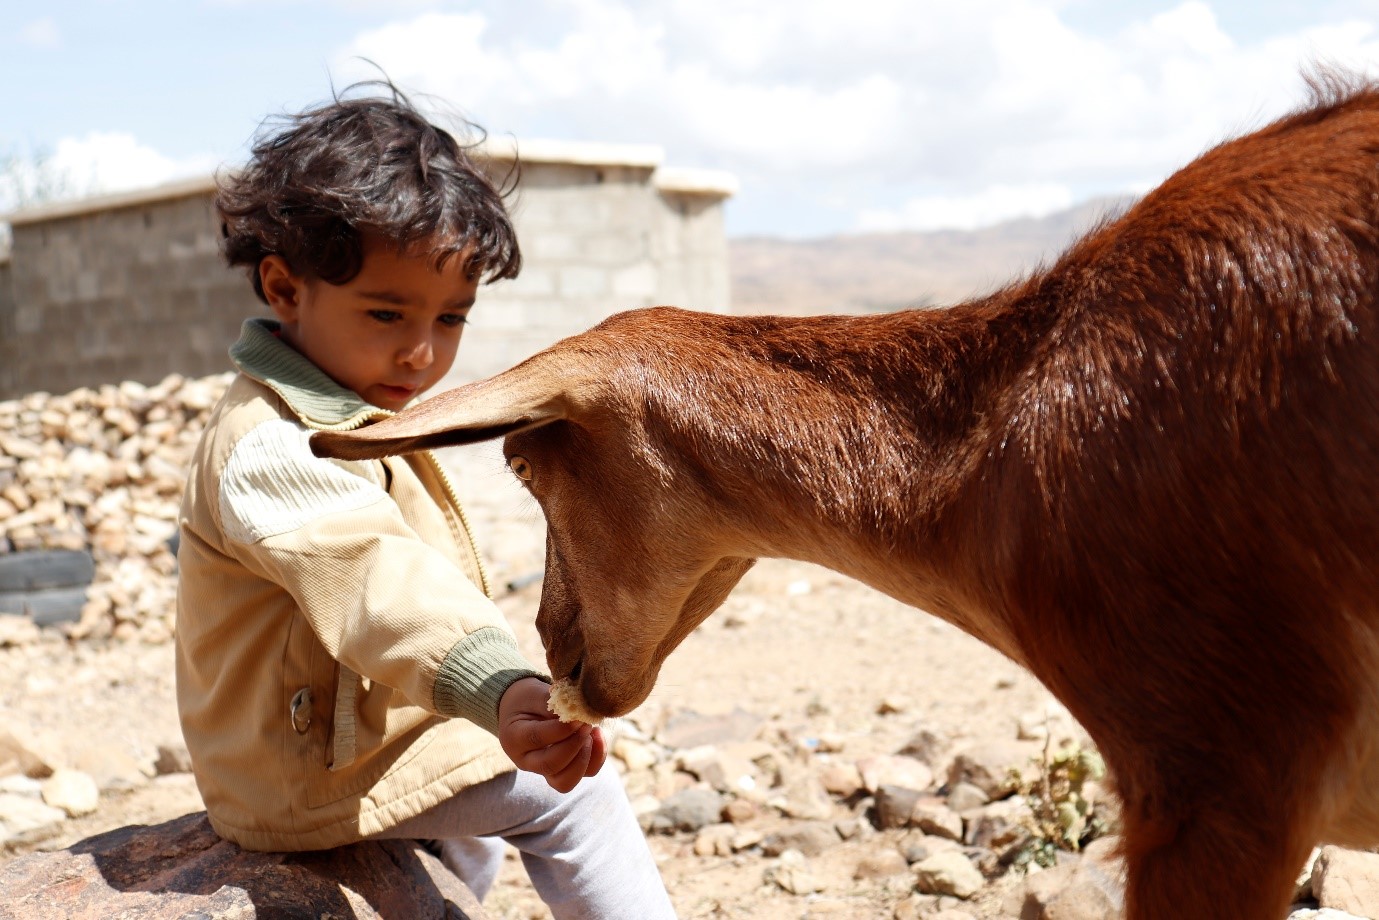 A small boy feeding a goat